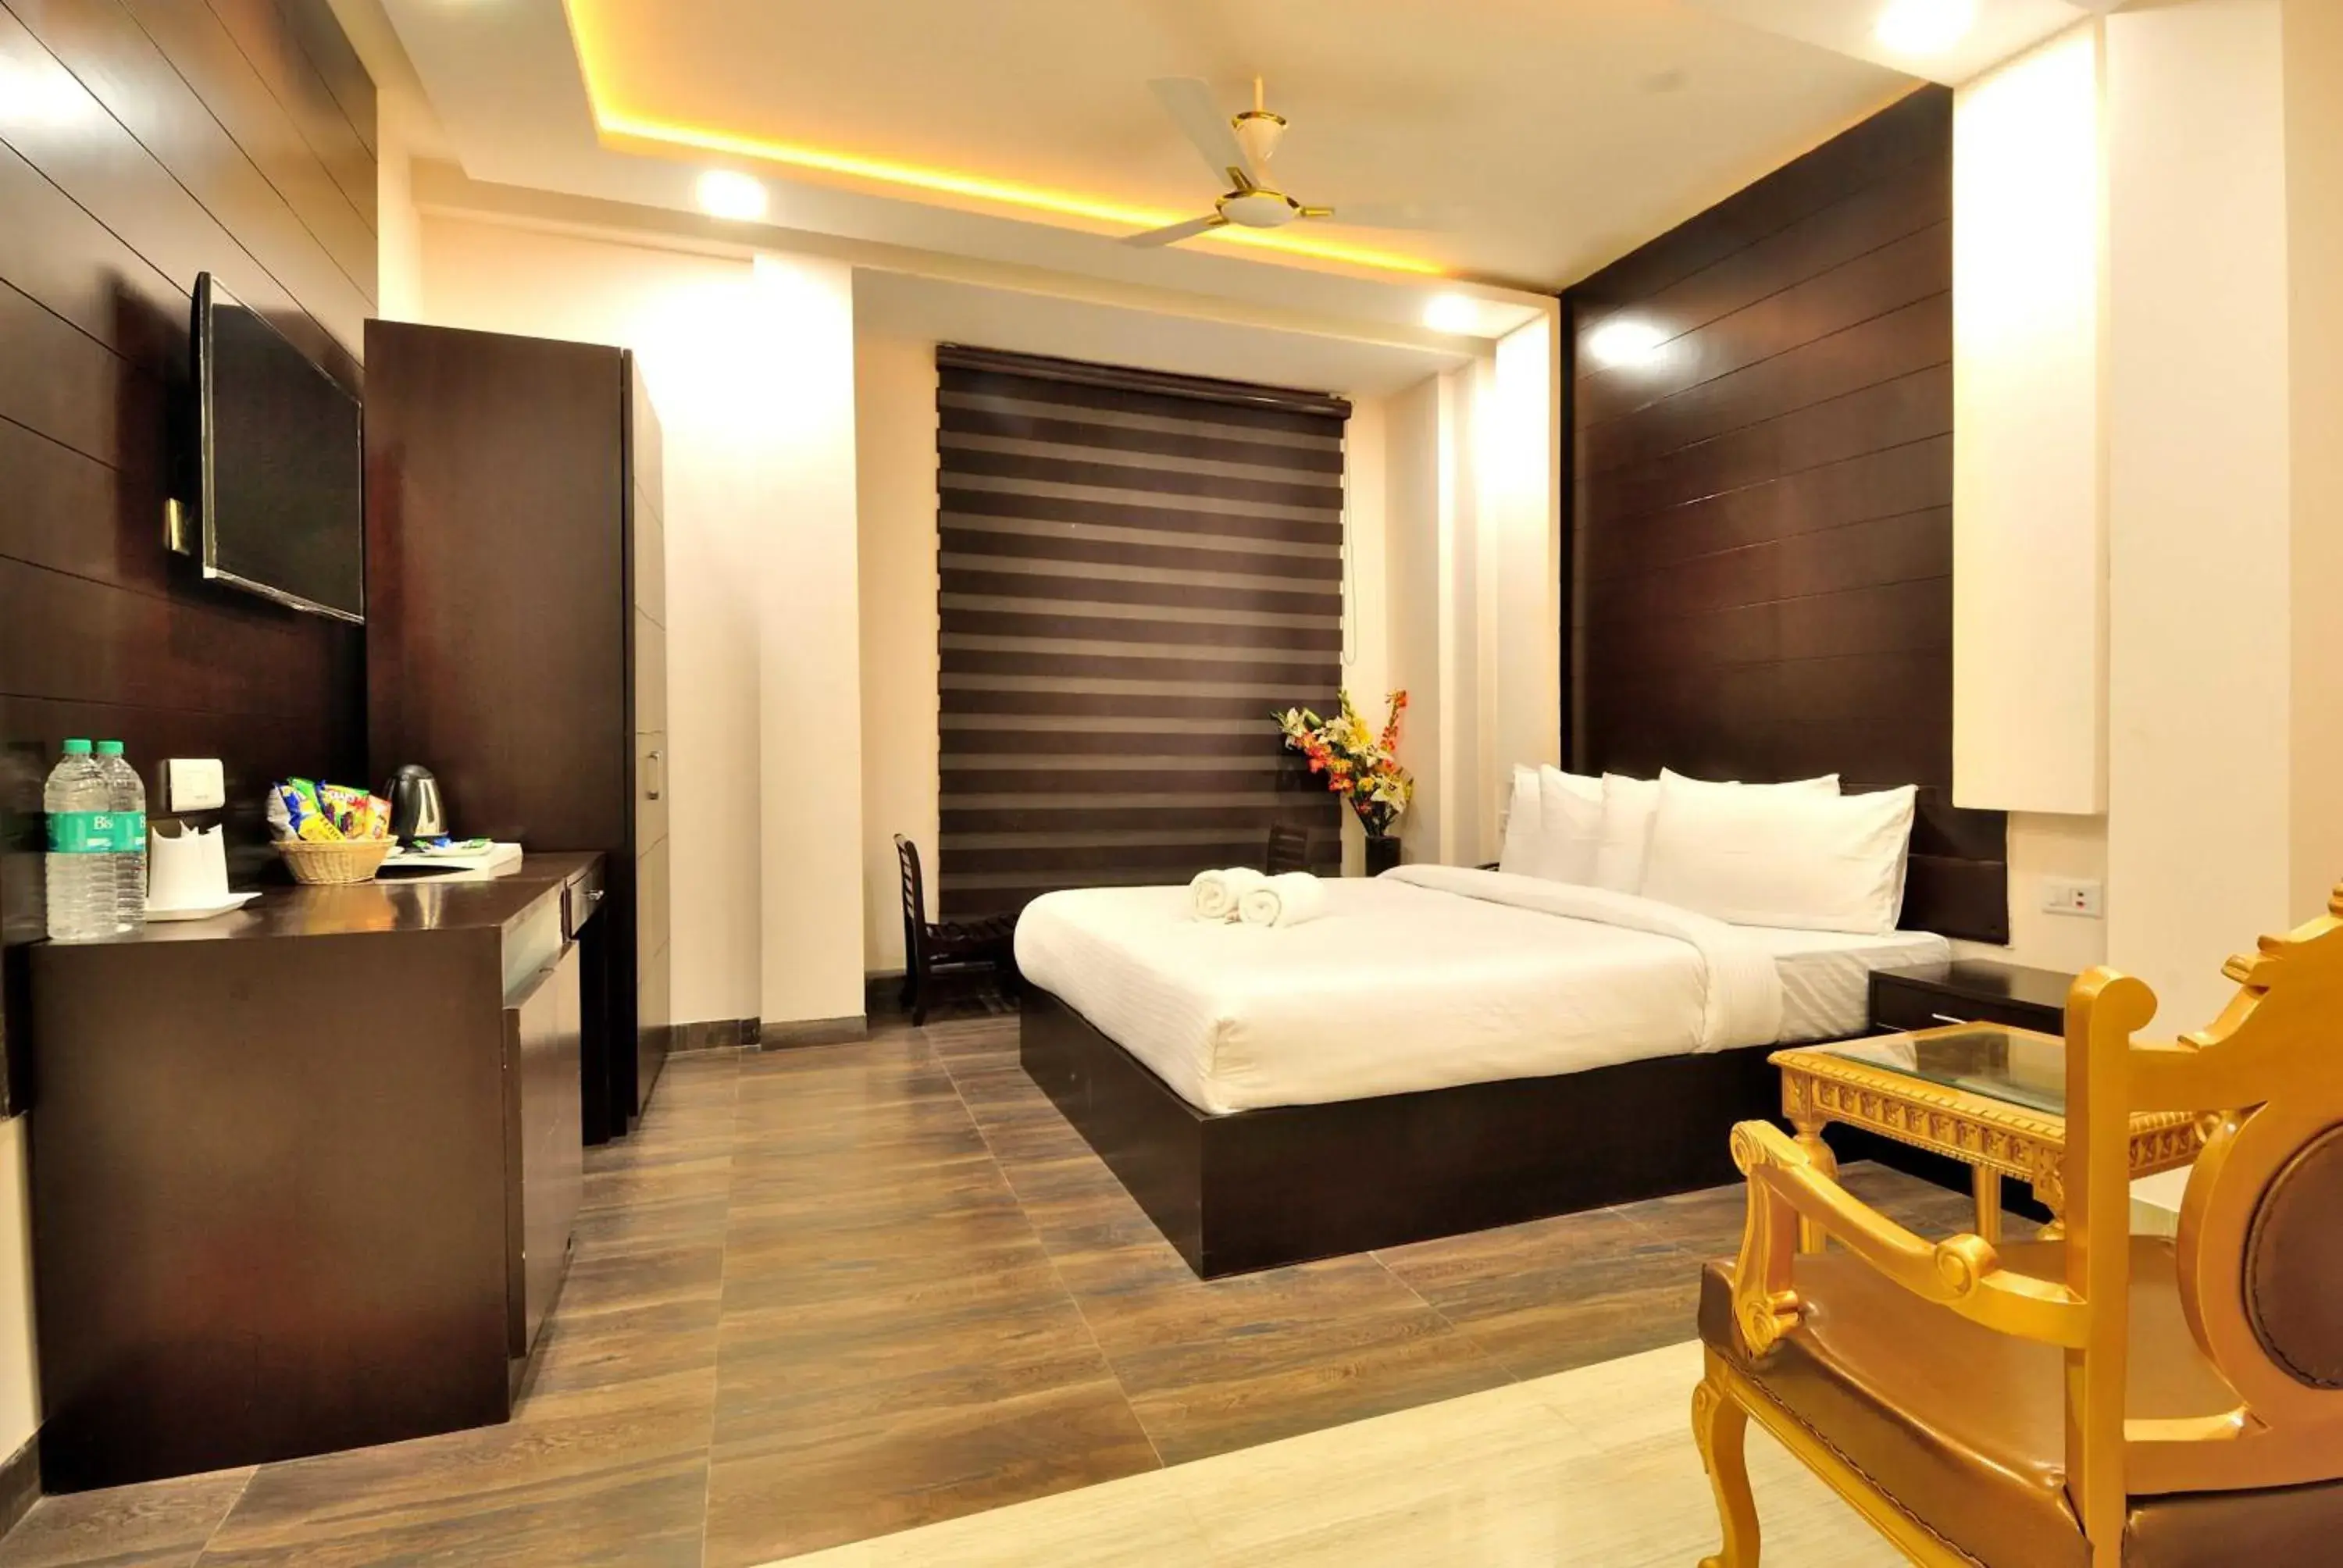 Bedroom in Hotel Kings Inn, Karol Bagh, New Delhi